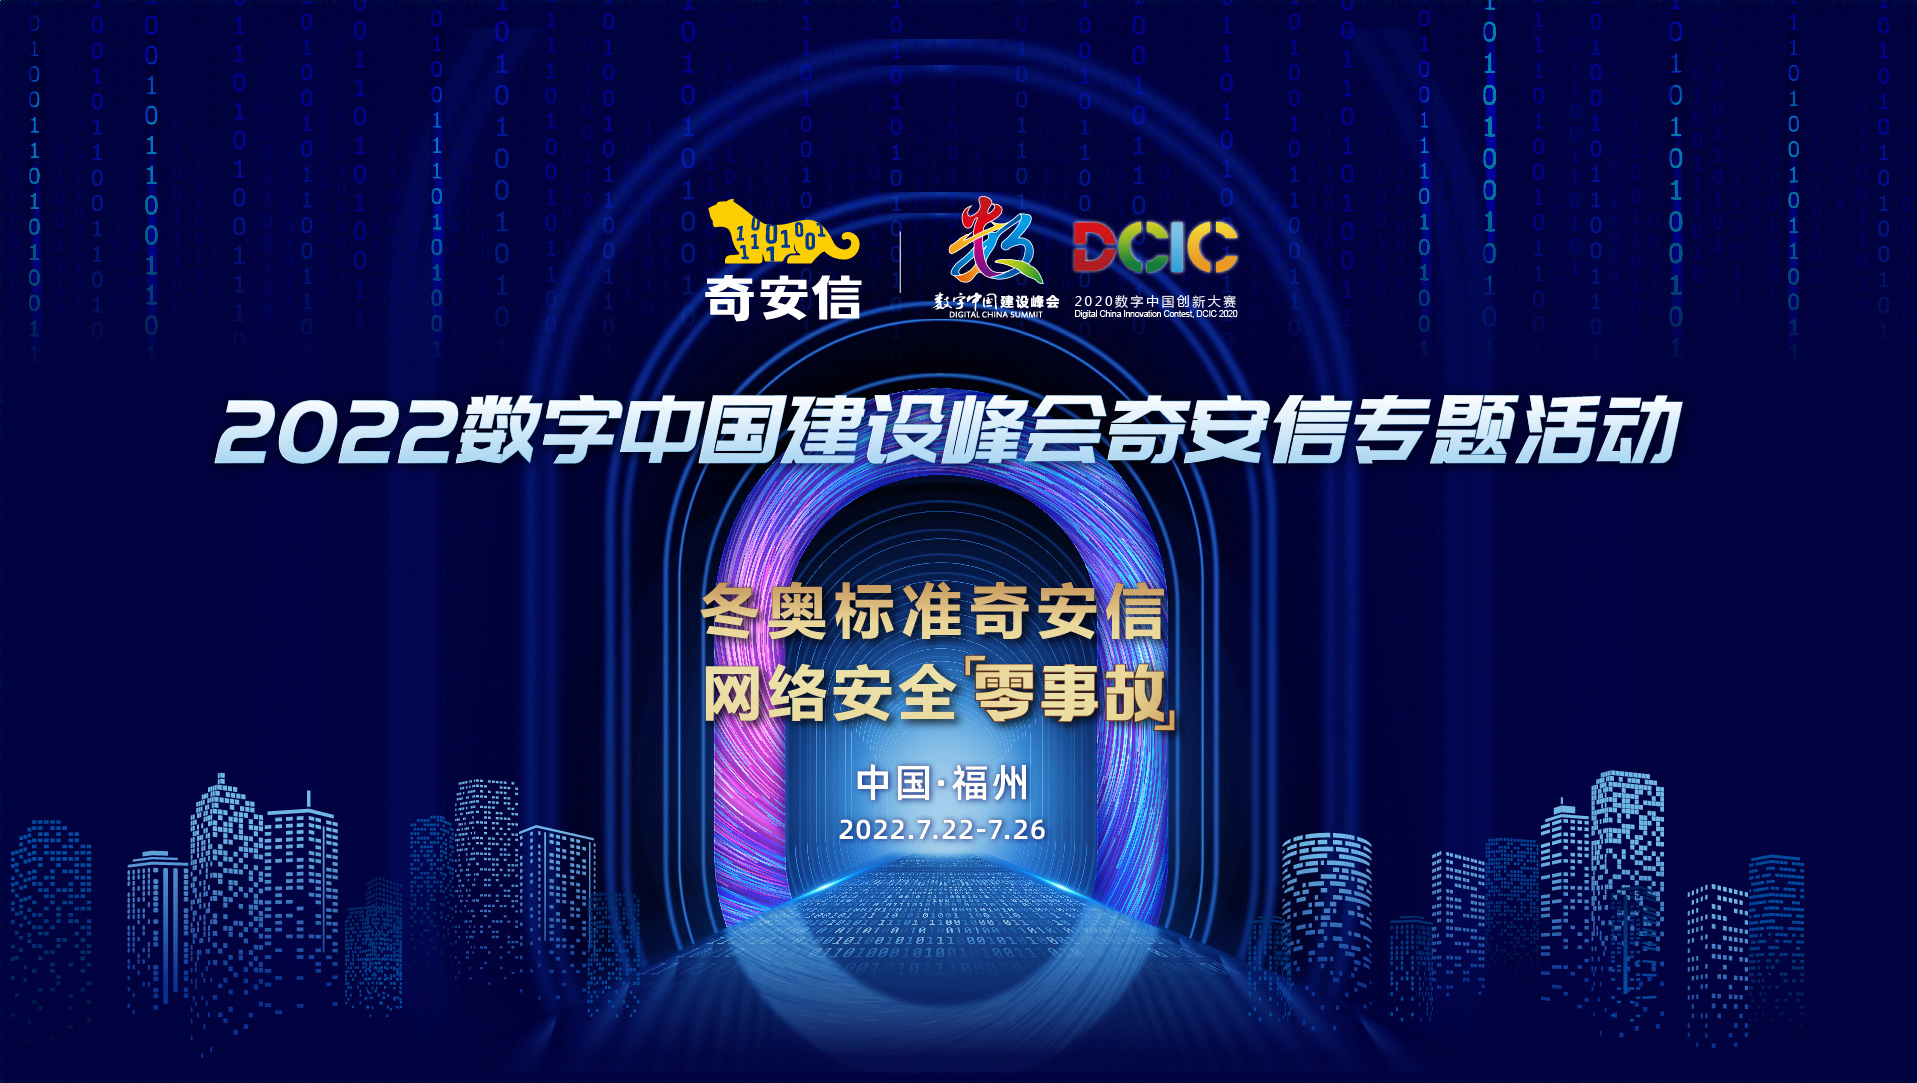 第五屆數字中國建設峰會——冬奧標準奇安信 網絡安全零事故系列精彩活動